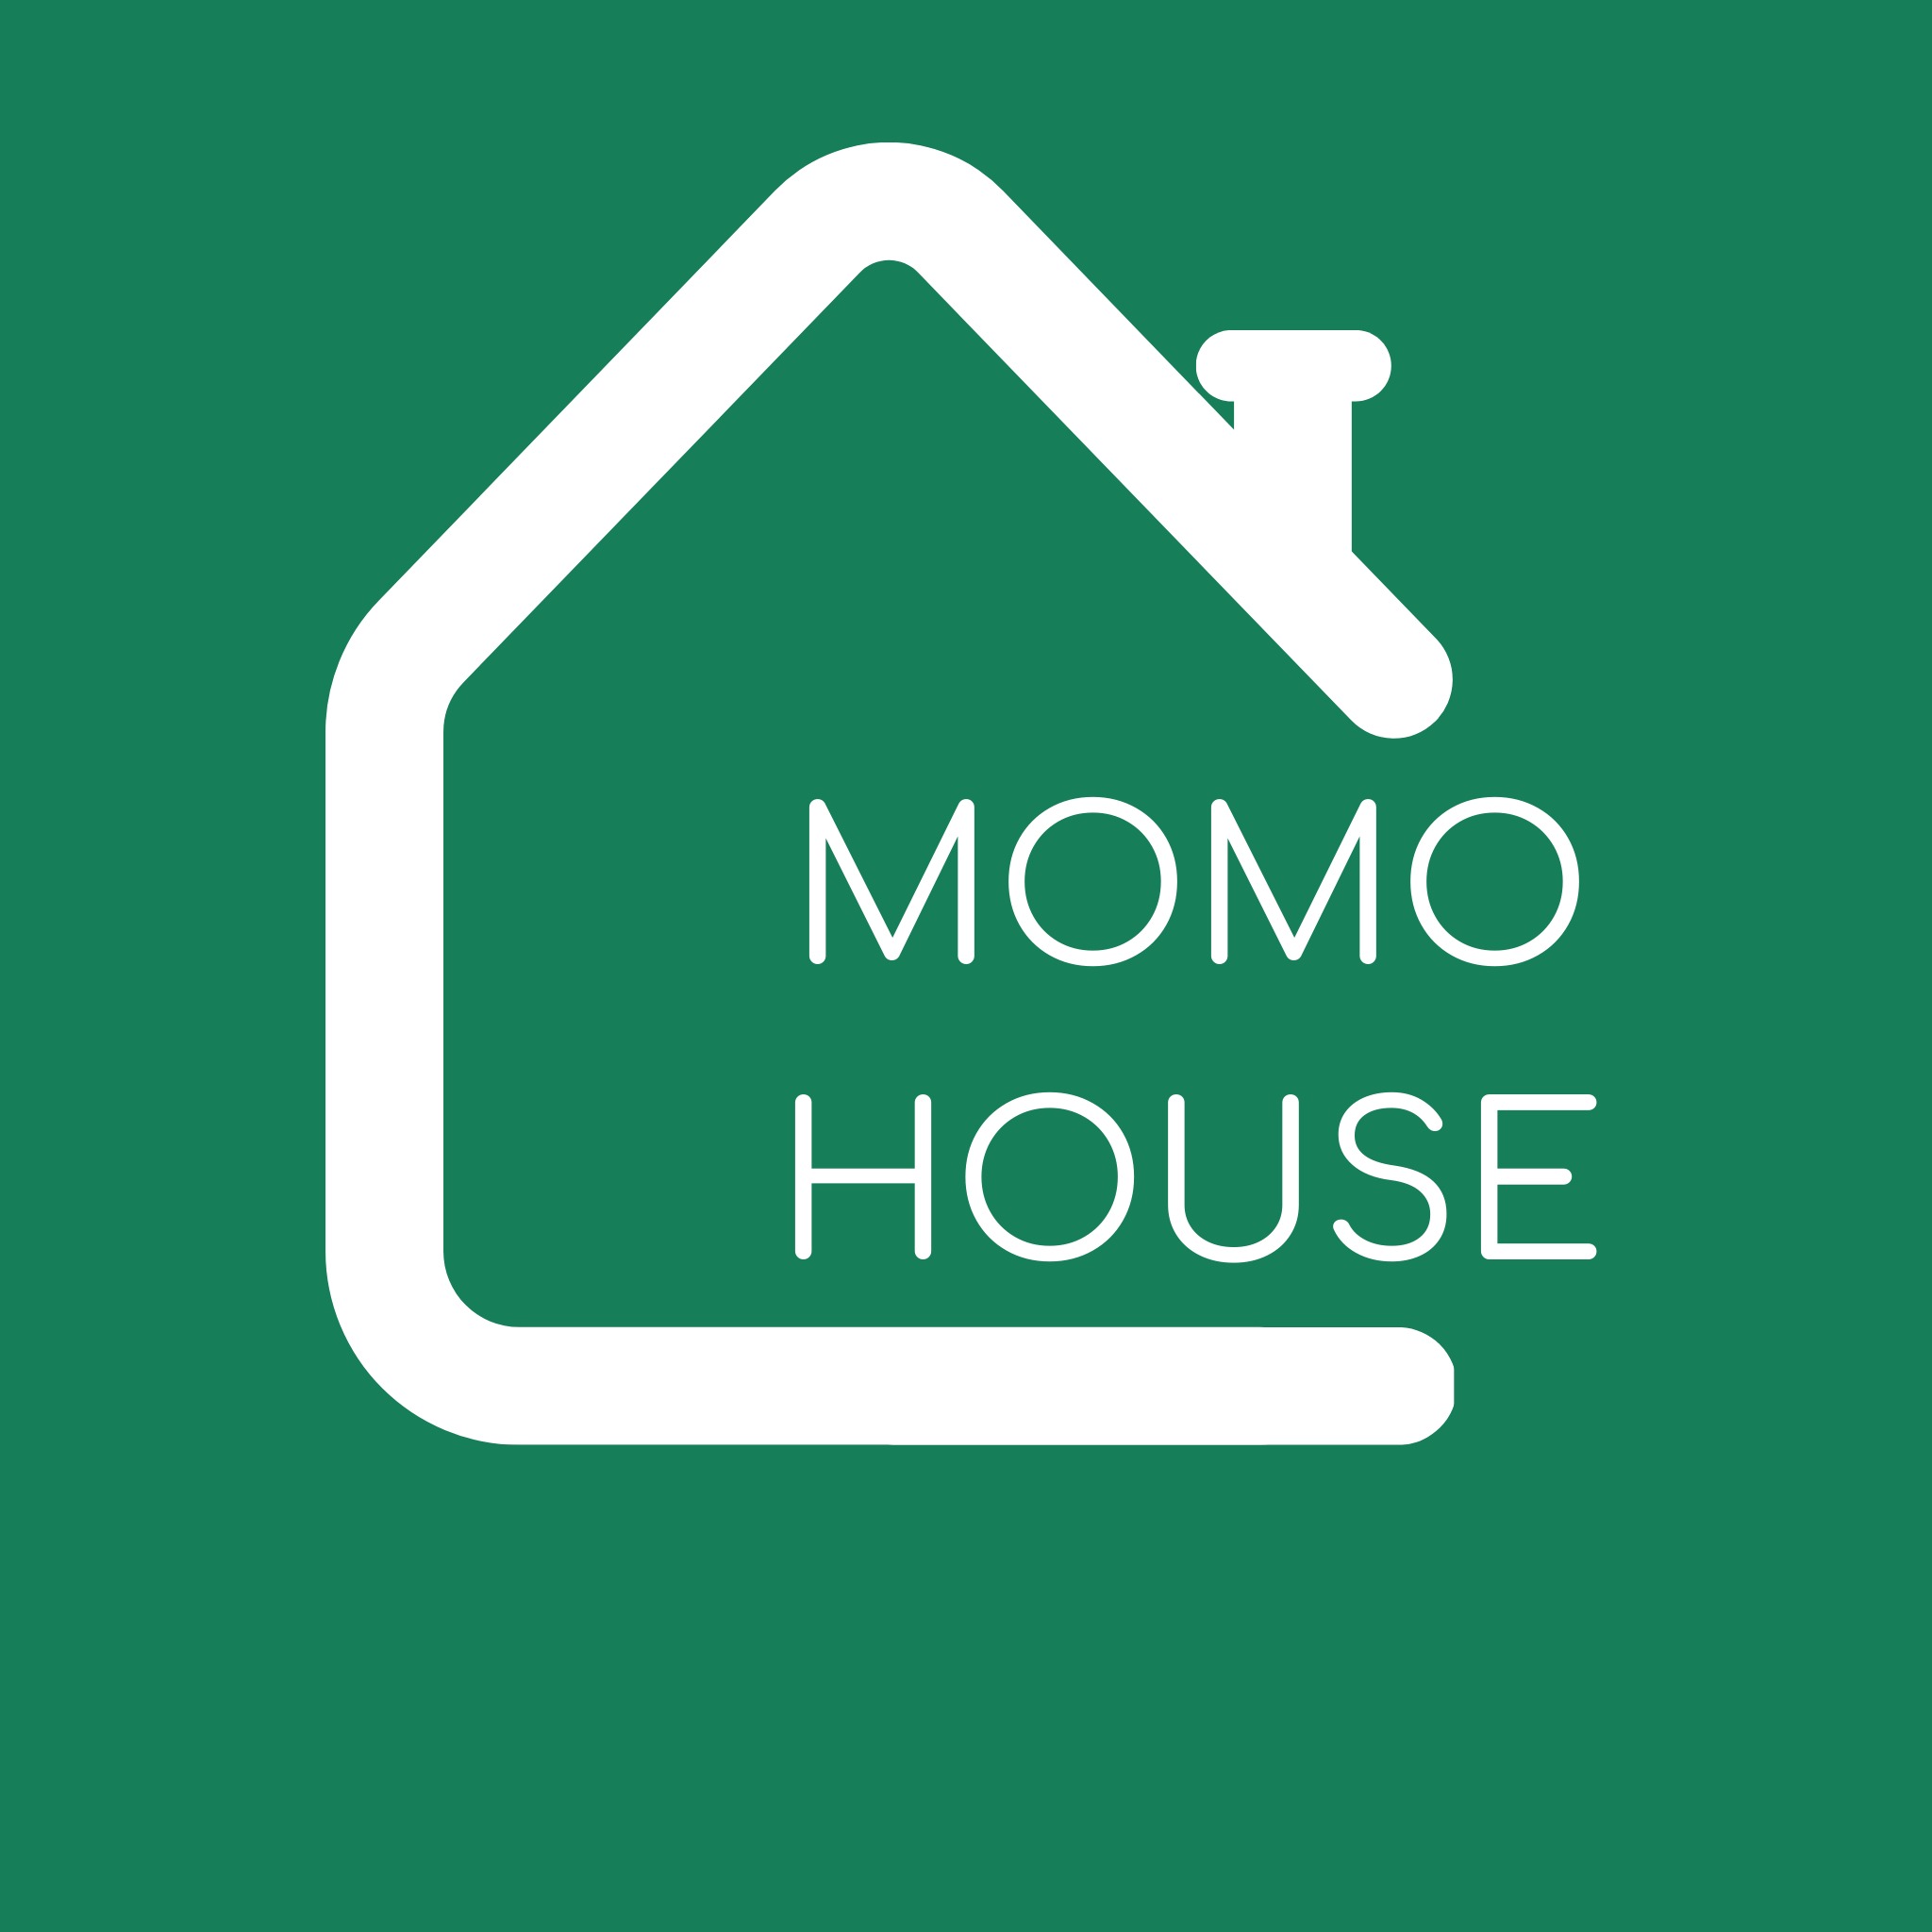 MoMo House - Nhà của Mỡ